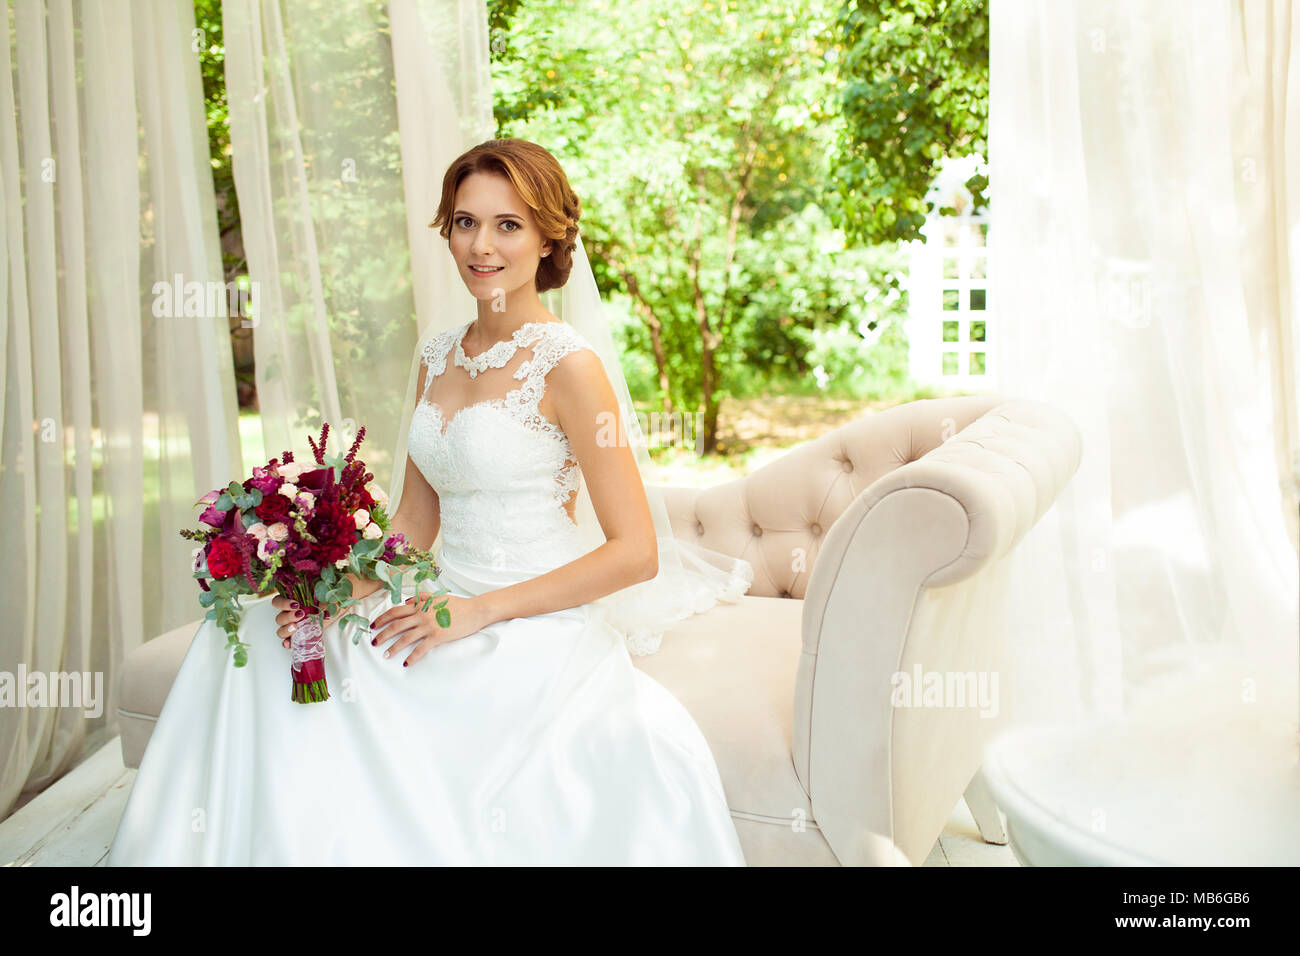 Attraktive Braut mit Blumenstrauß Blume tragen Hochzeit weiß Kleid sitzt auf beige Sofa in Park Stockfoto